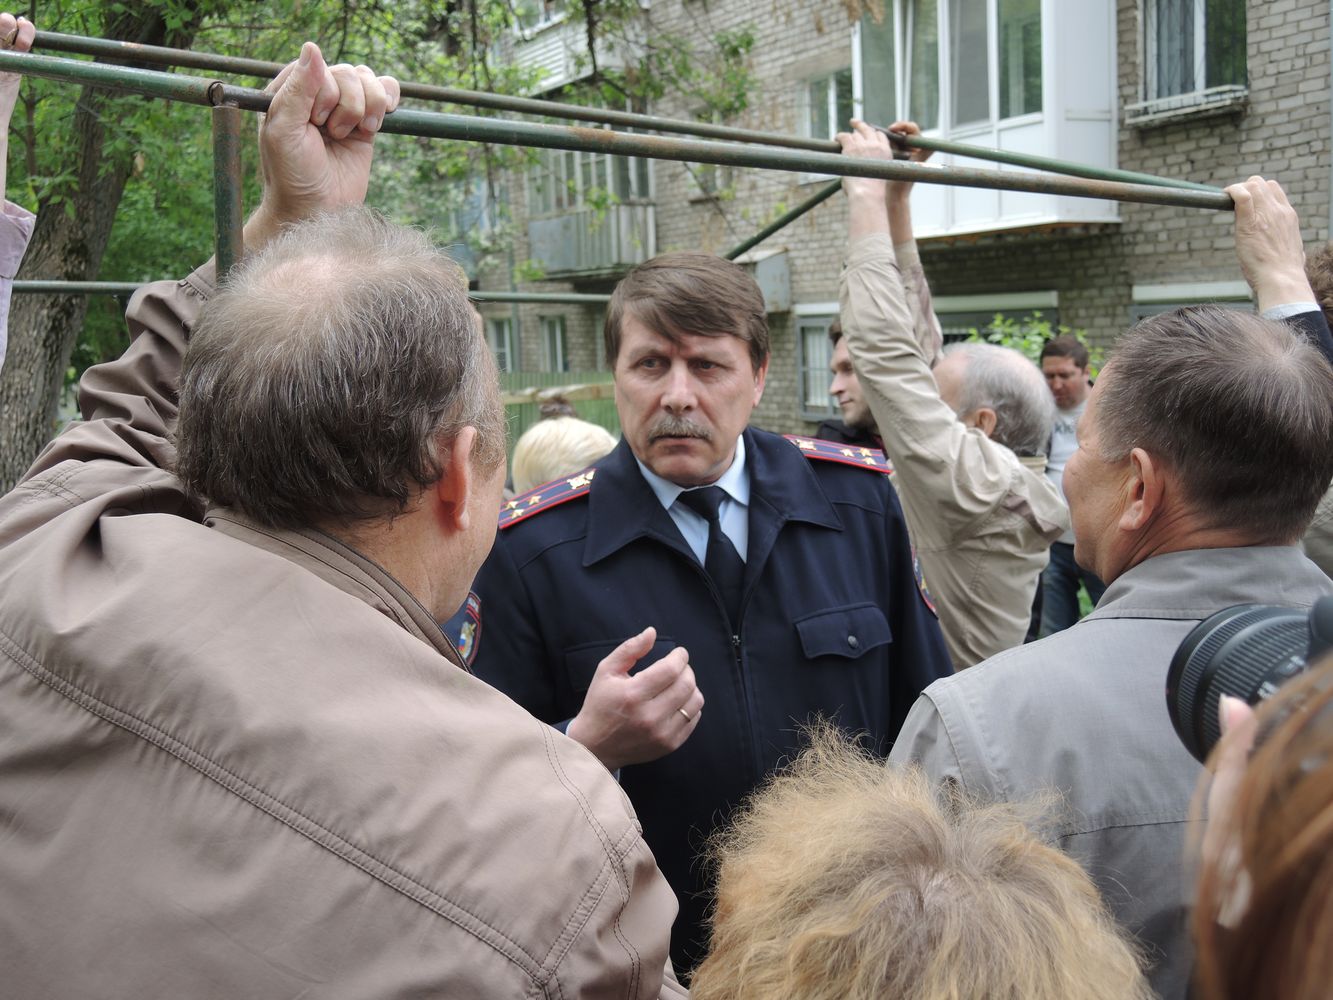 Полковник полиции Сергей Козлов уговаривает участников схода успокоиться и соблюдать порядок. Фото ©День.org